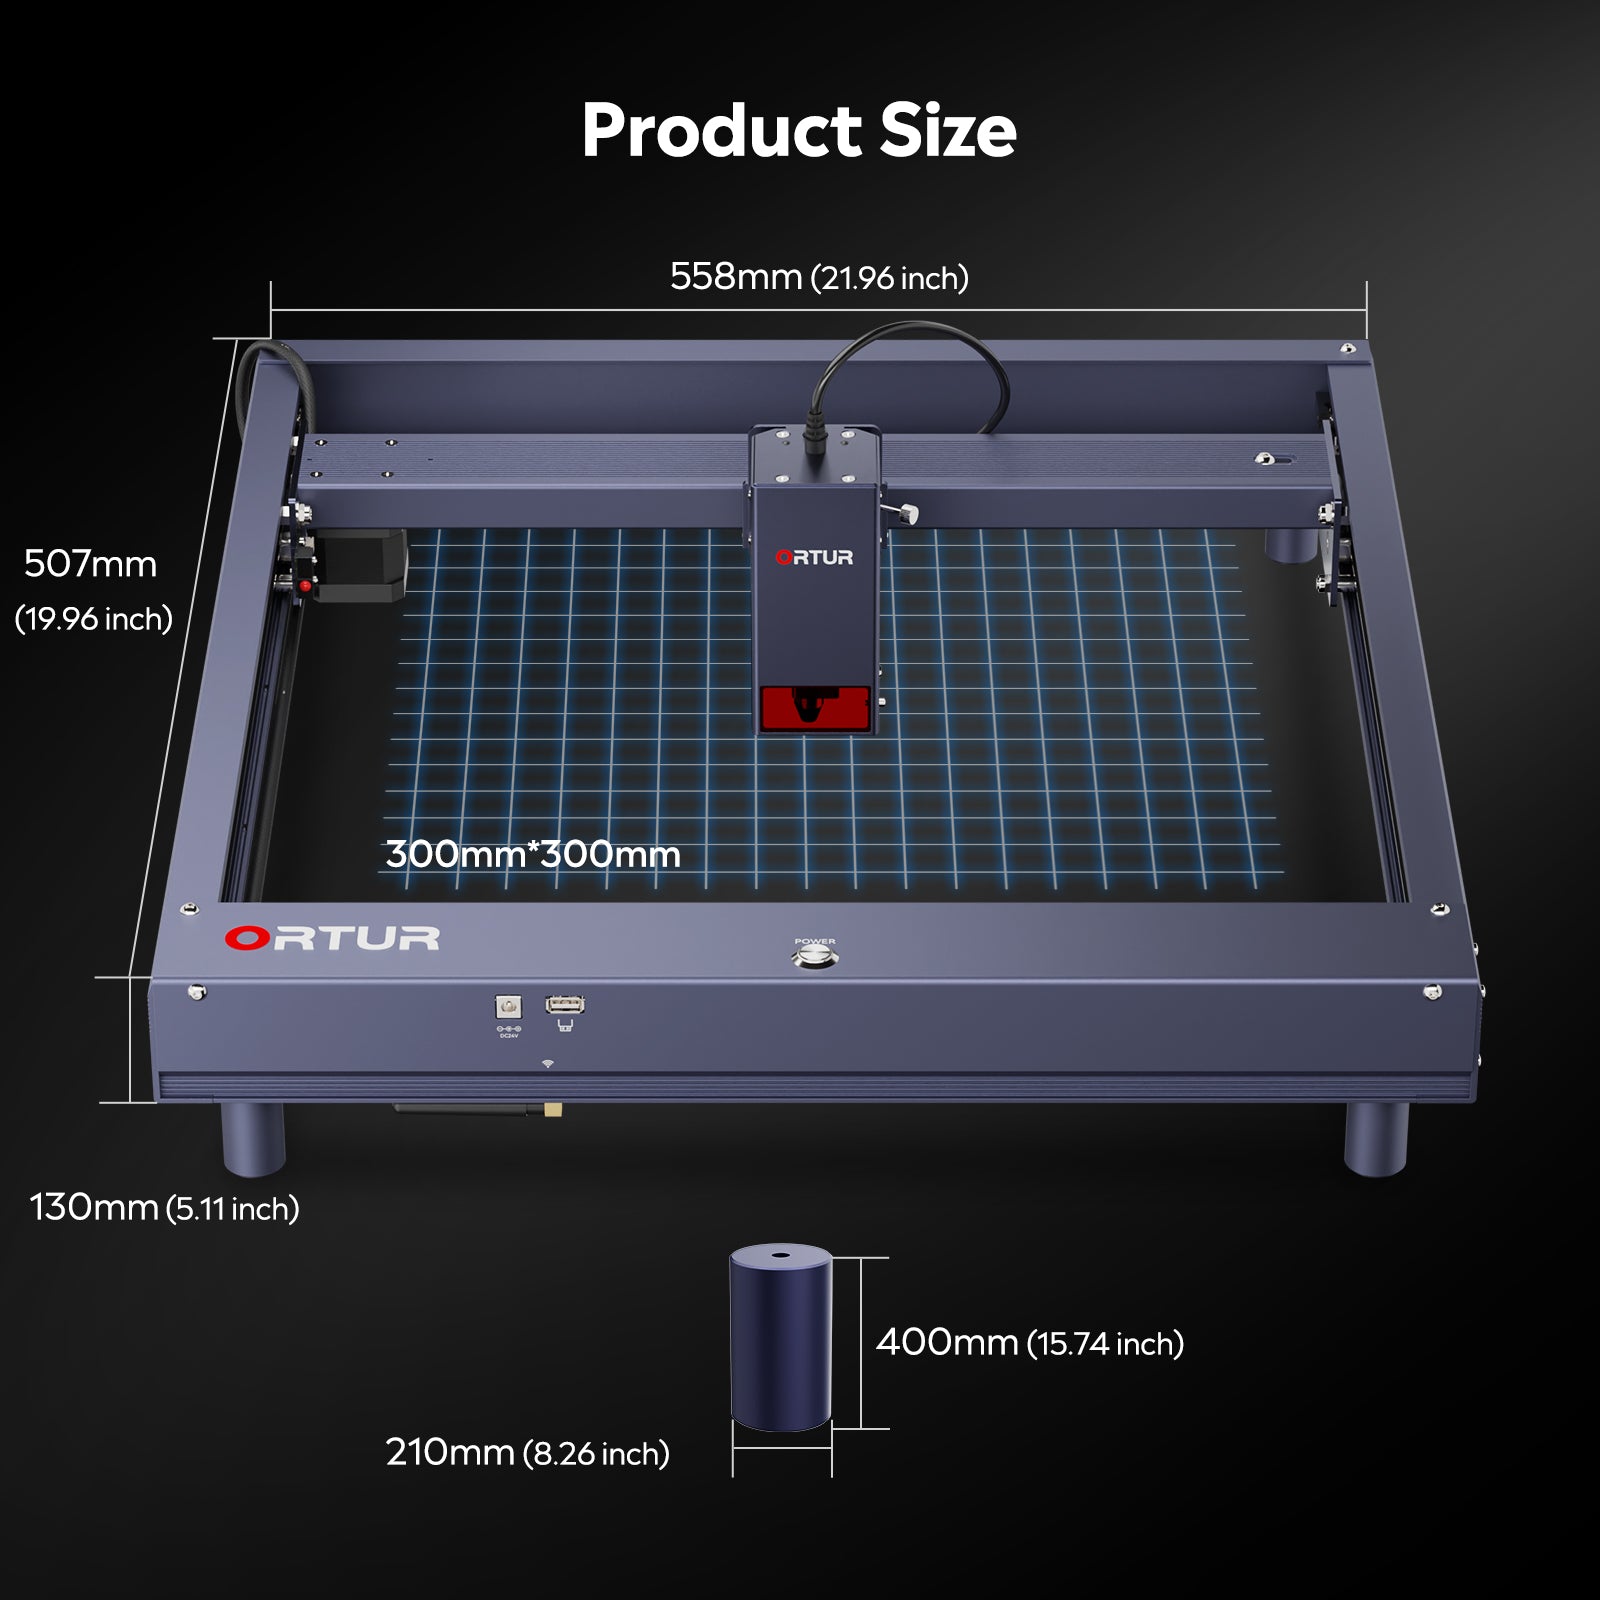 Ortur Laser Master H10 Máquina de Grabado y Corte 20.000 mm/min 20W